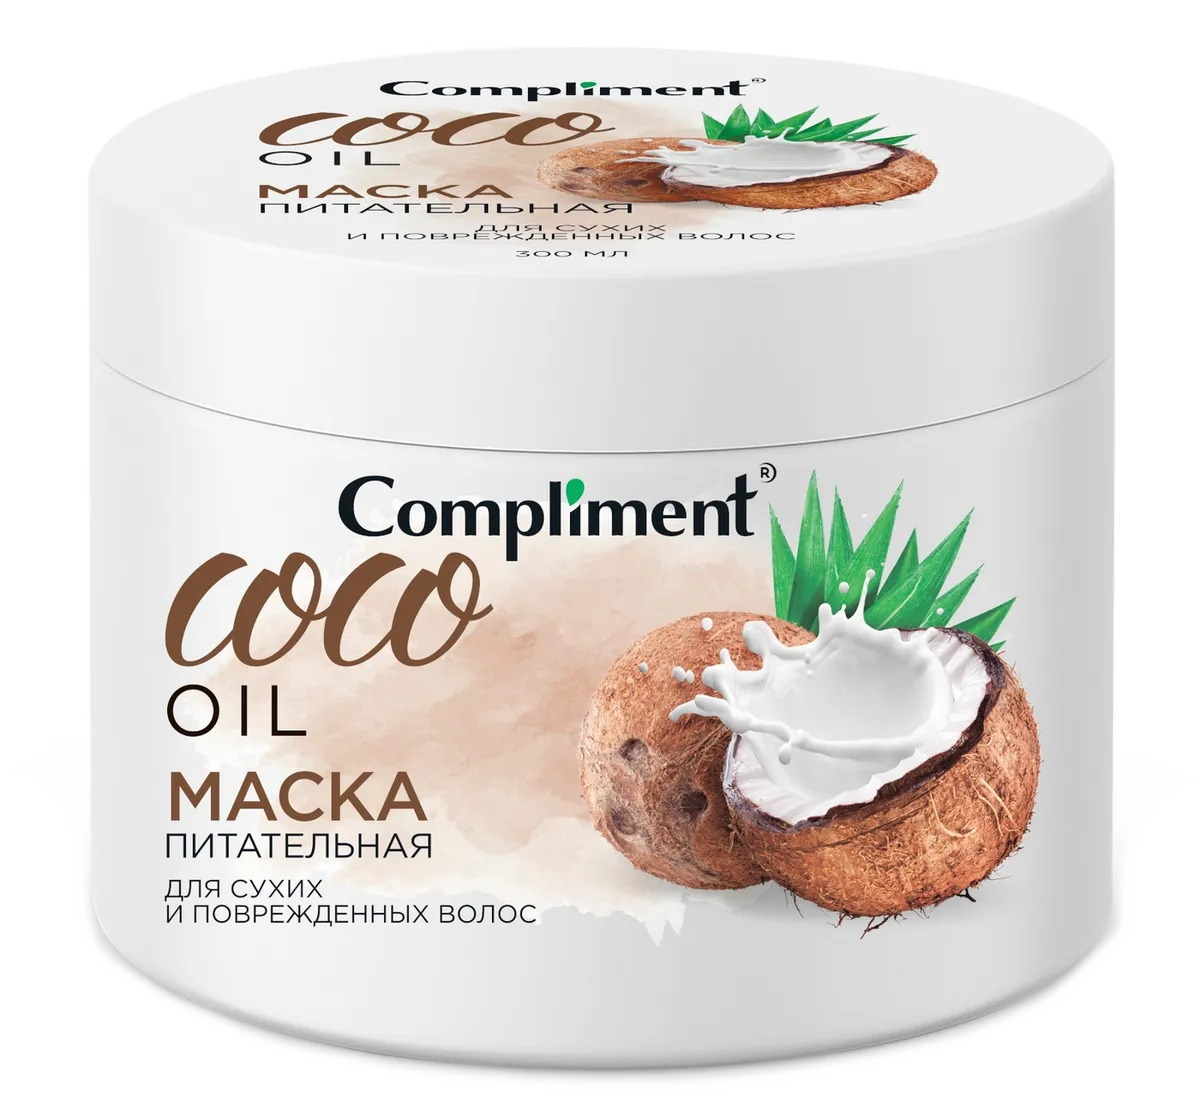 Купить Питательная маска для сухих и повреждённых волос Compliment COCO OIL 300 мл